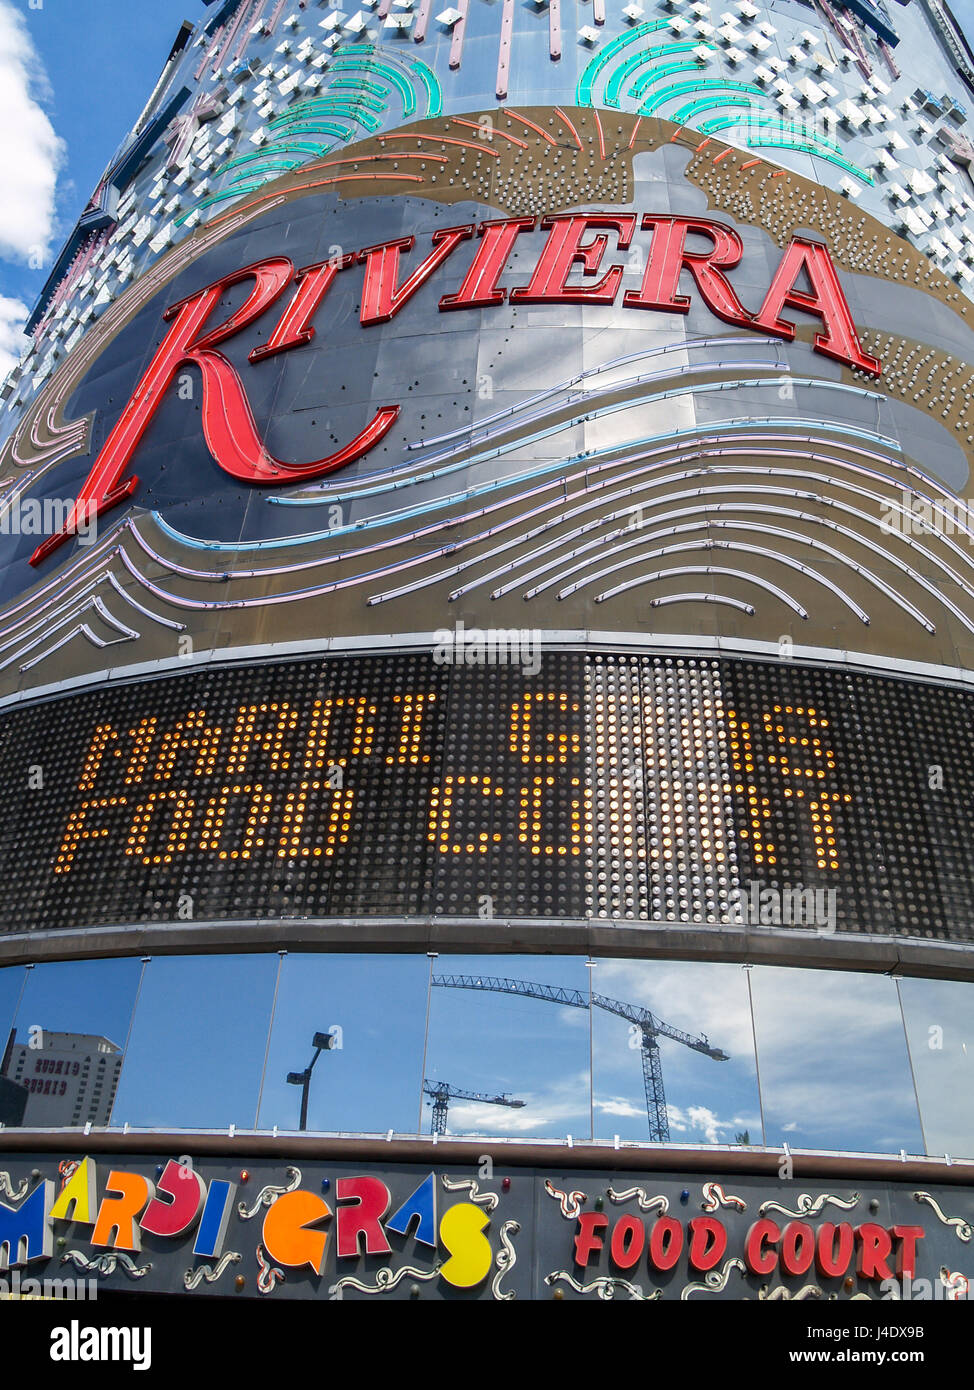 Las Vegas Strip, Riviera Hotel Stock Photo - Alamy